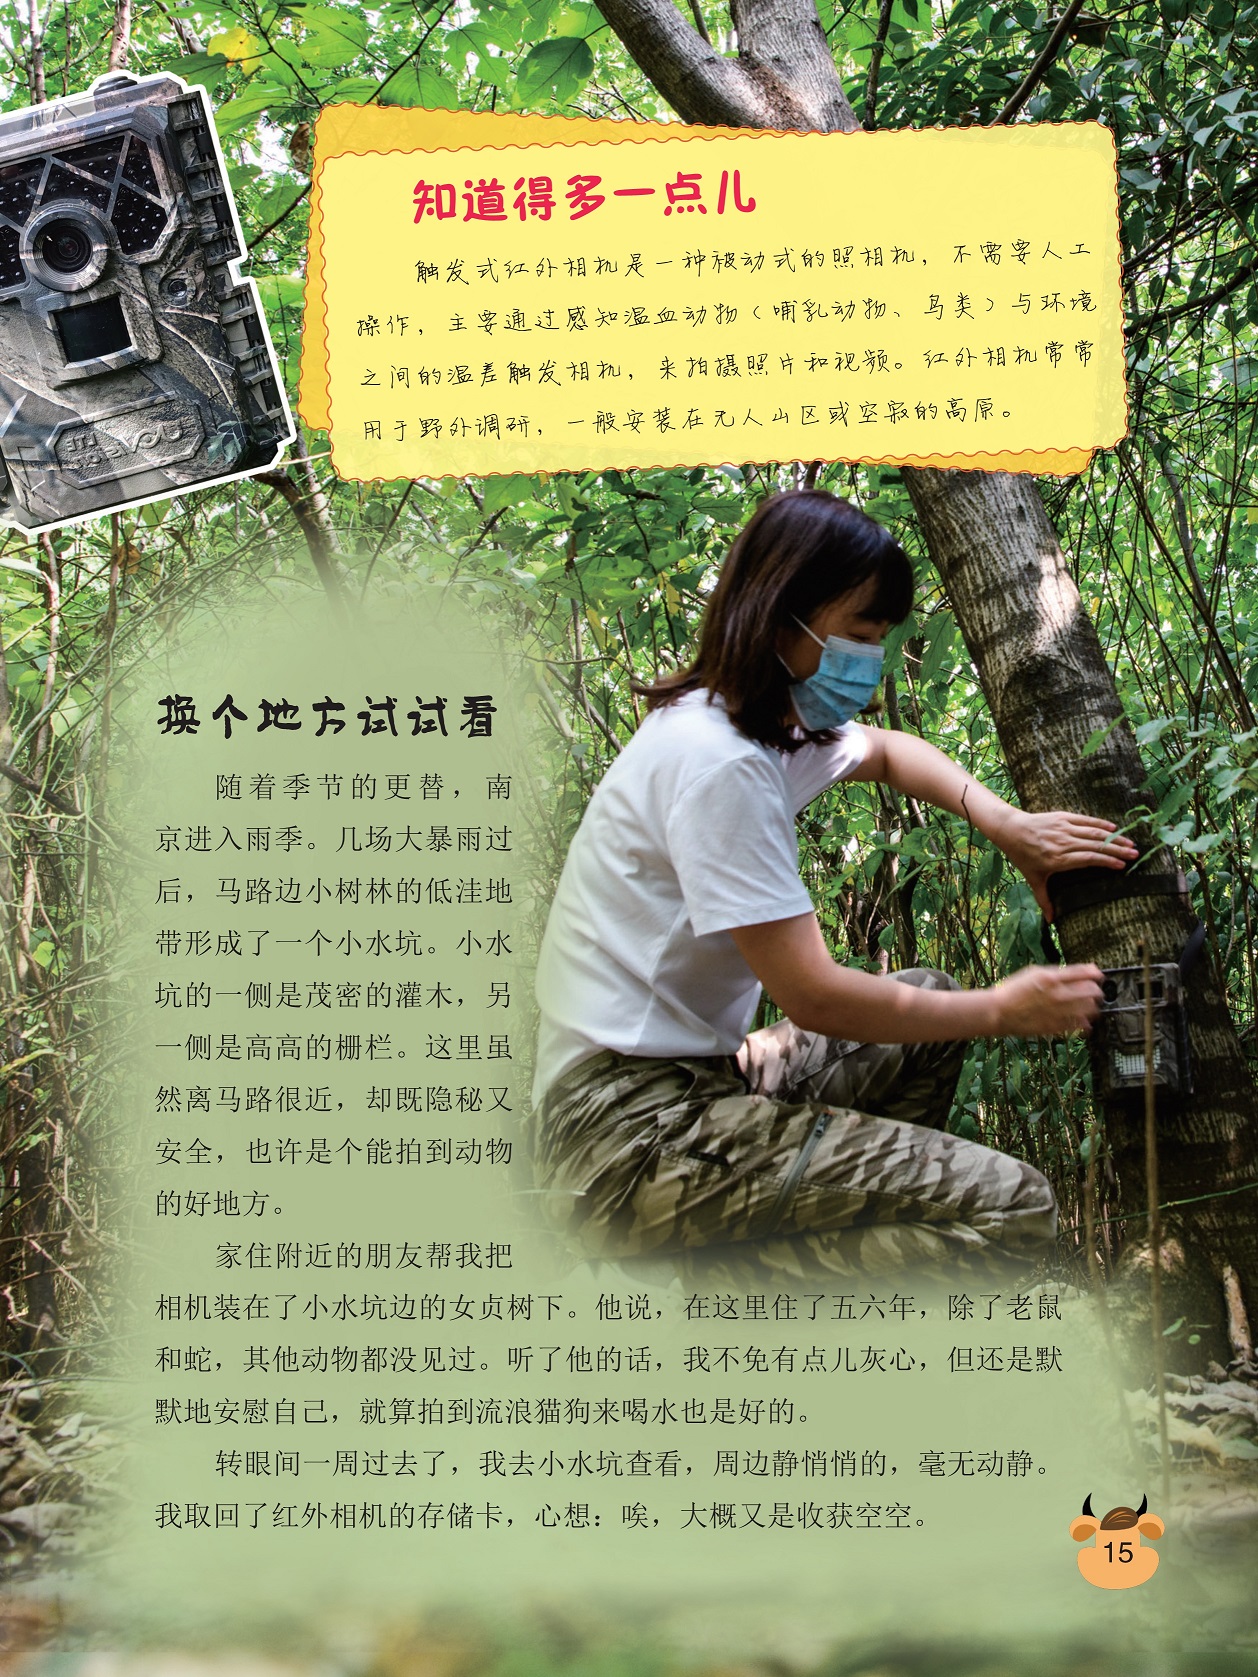 触发式红外相机是一种被动式的照相机,小水坑边的女贞树下